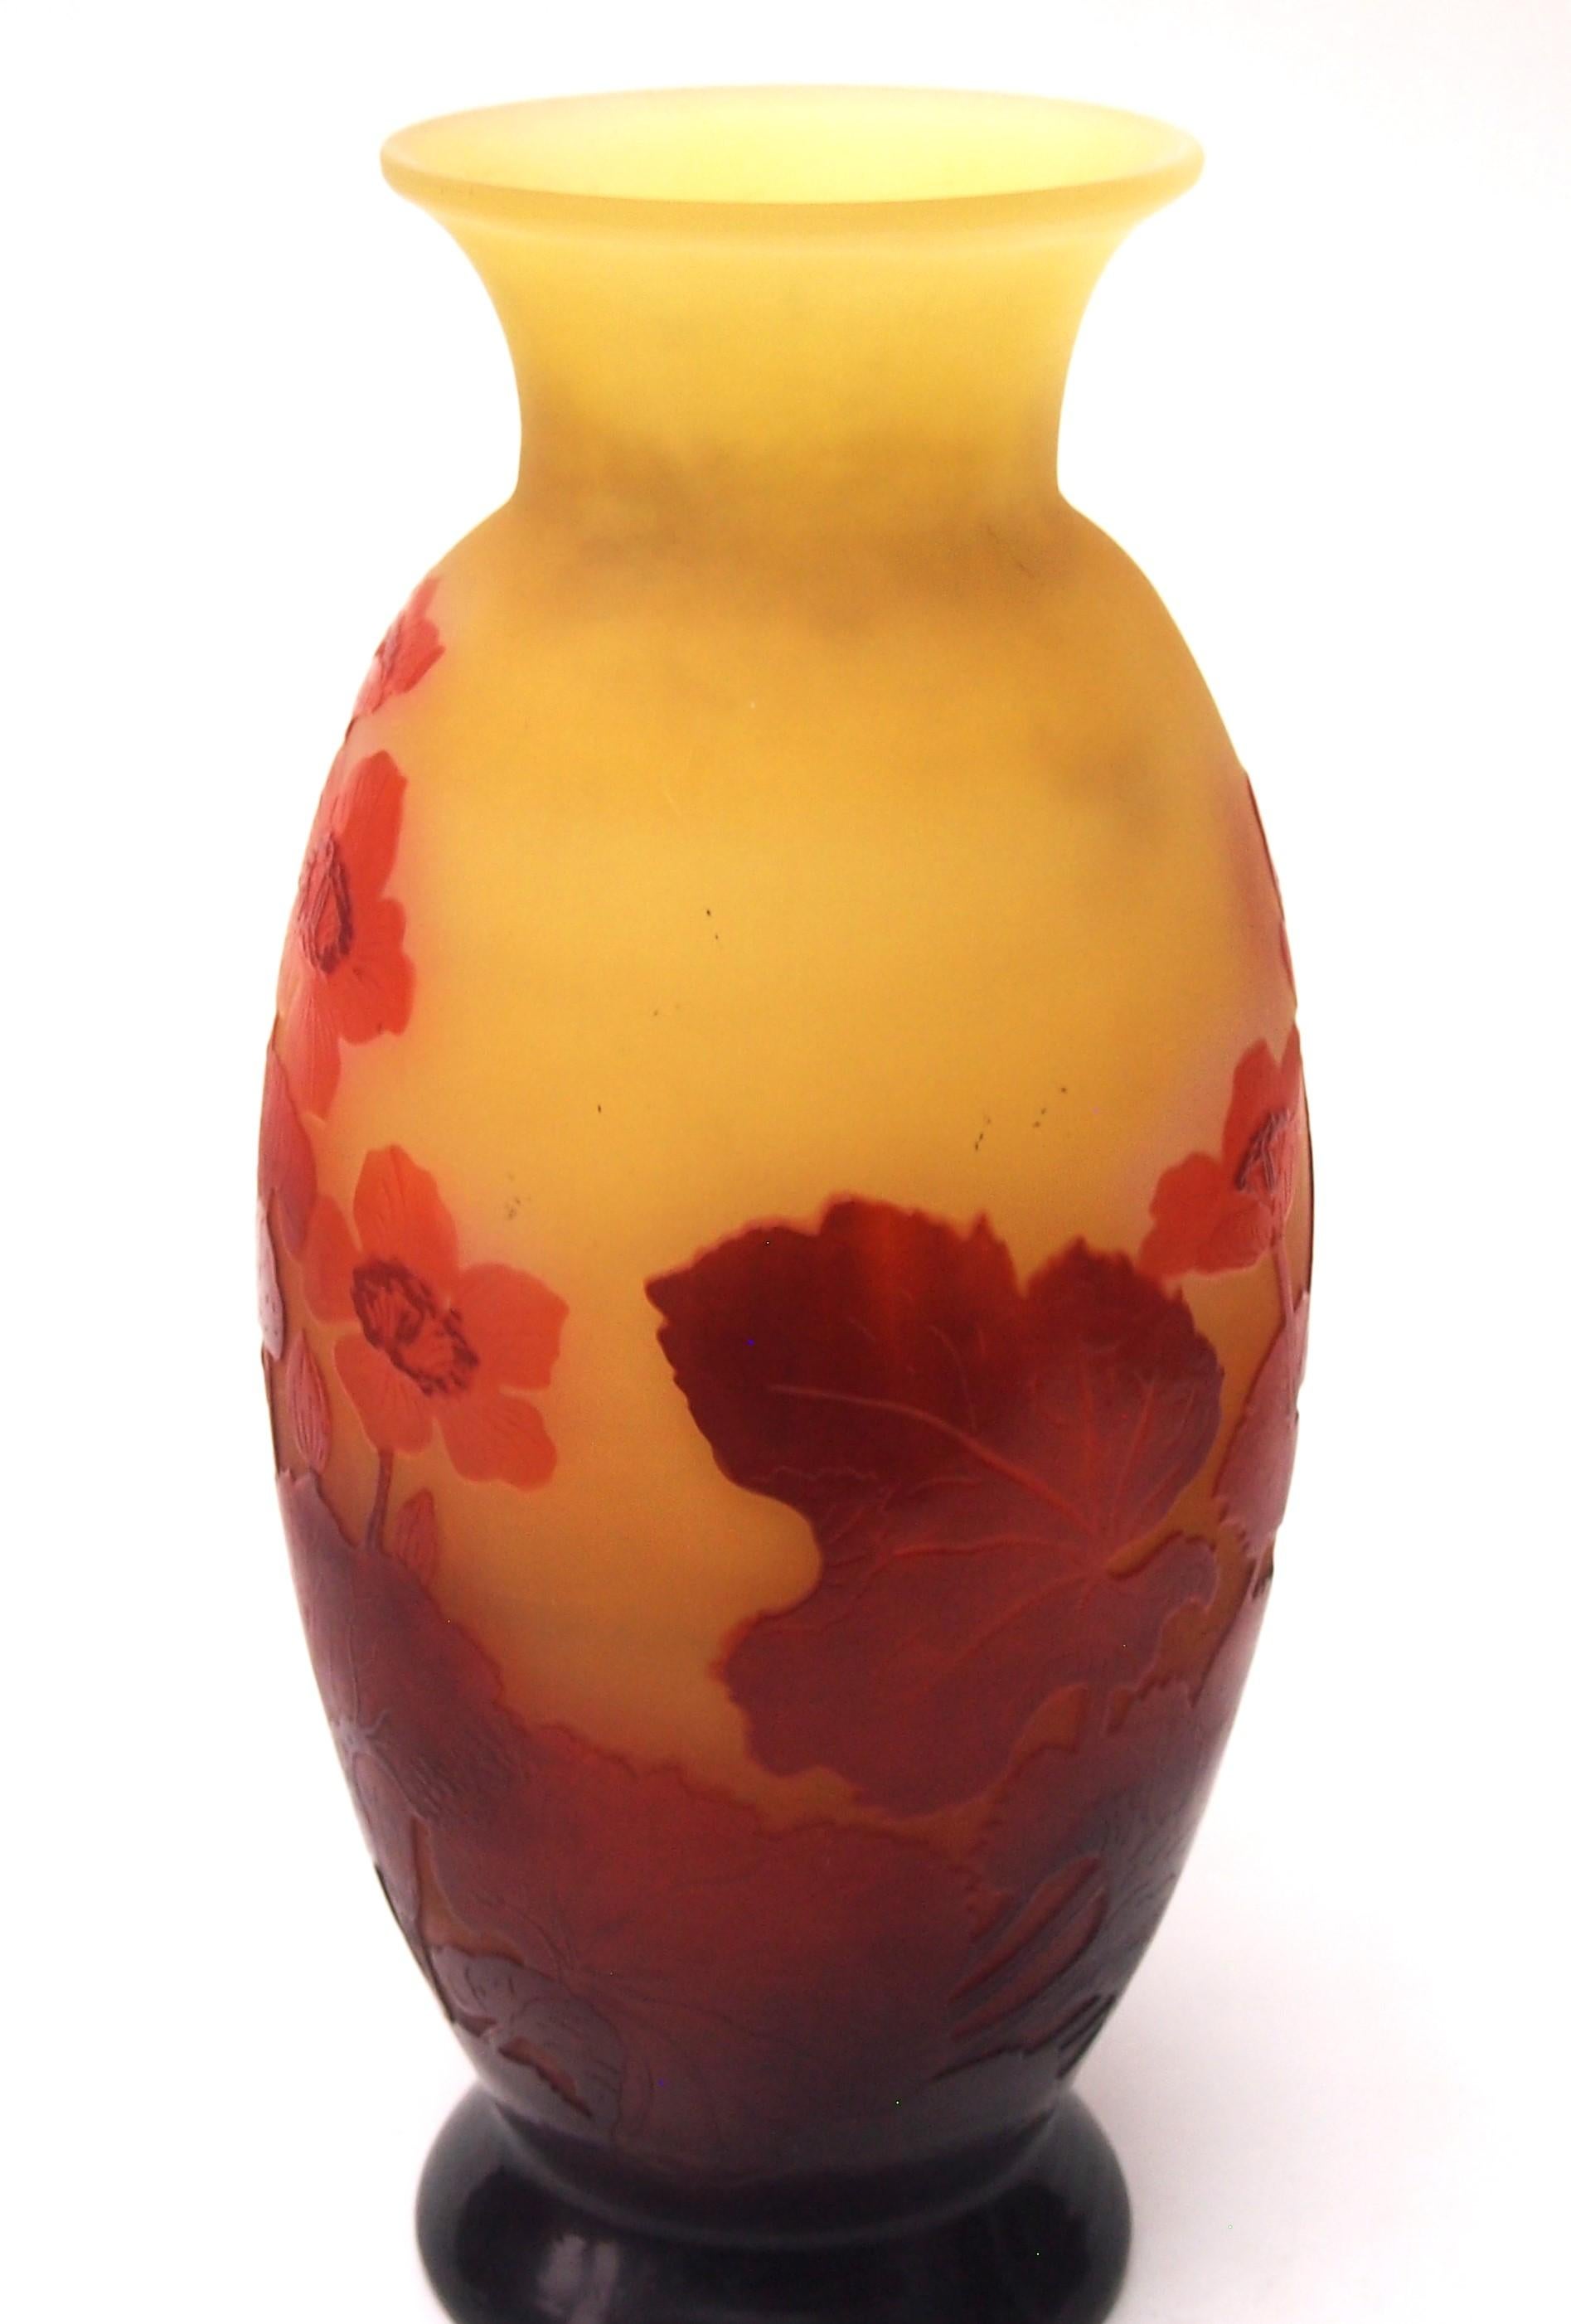 Vase camée Emile Gallé de style Art Nouveau représentant de multiples anémones fleuries en rouge sur jaune orangé, avec un fin polissage interne pour mettre en valeur le rouge des fleurs -de bonne taille et de bonne forme- là où le polissage interne